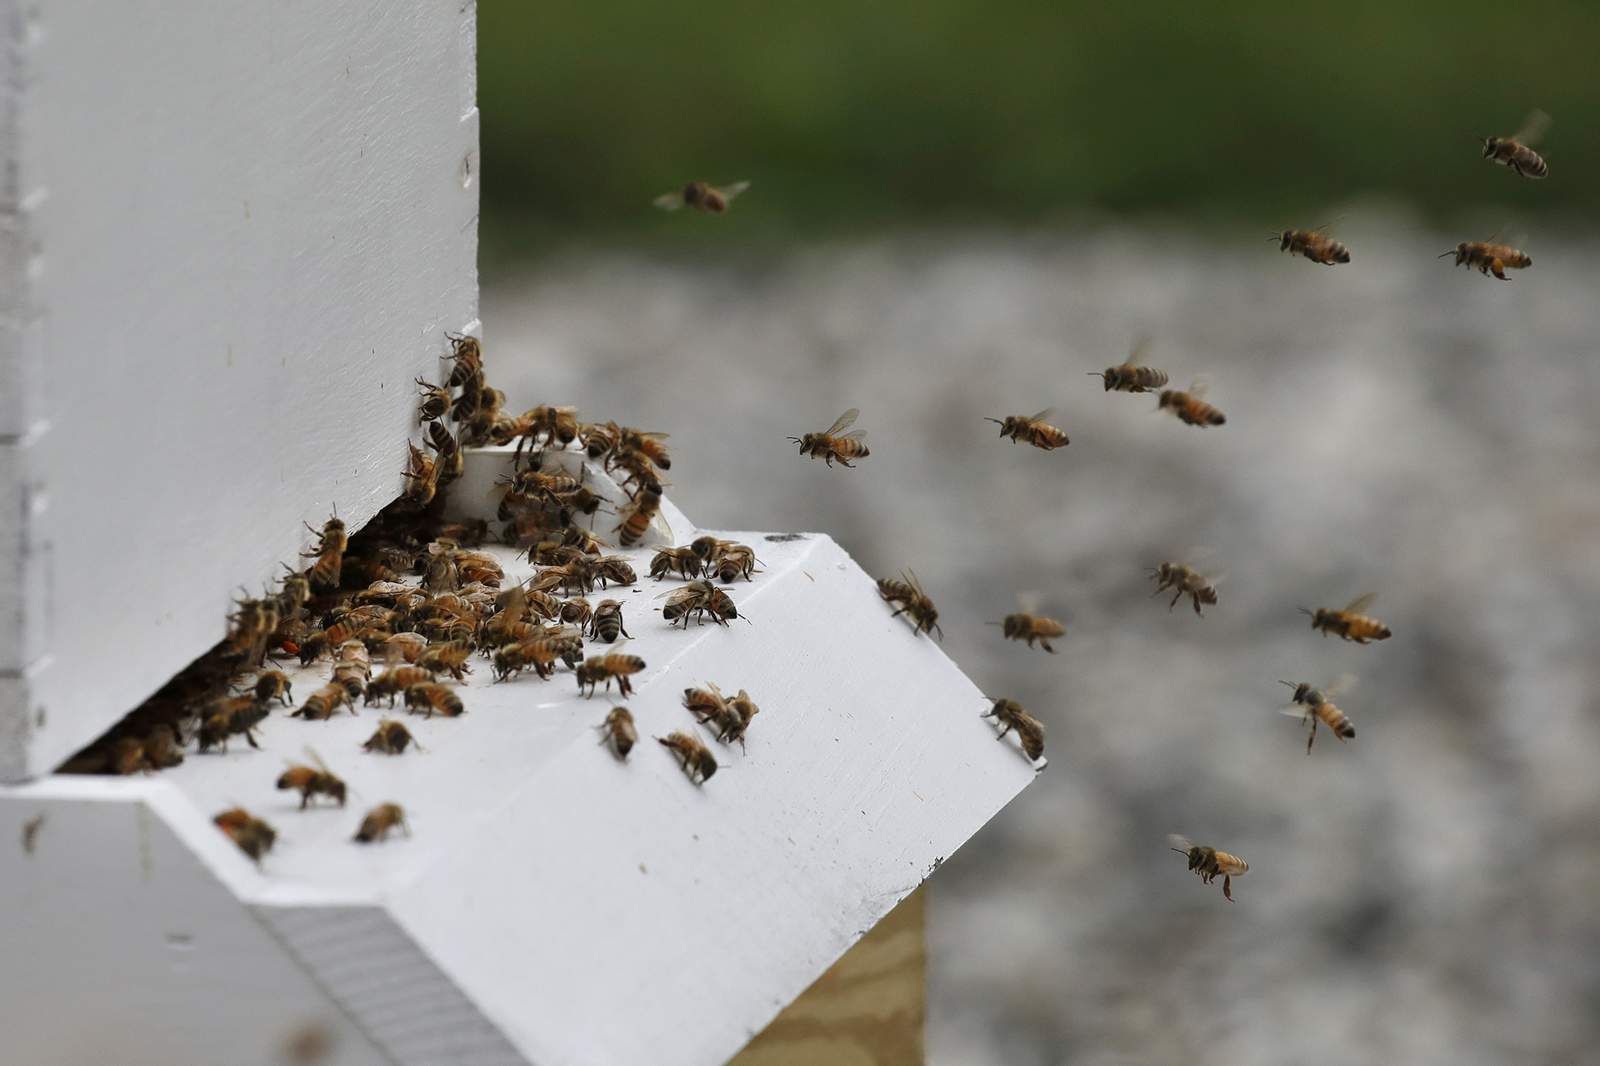 Ann Arbor Backyard Beekeepers offers beekeeping classes